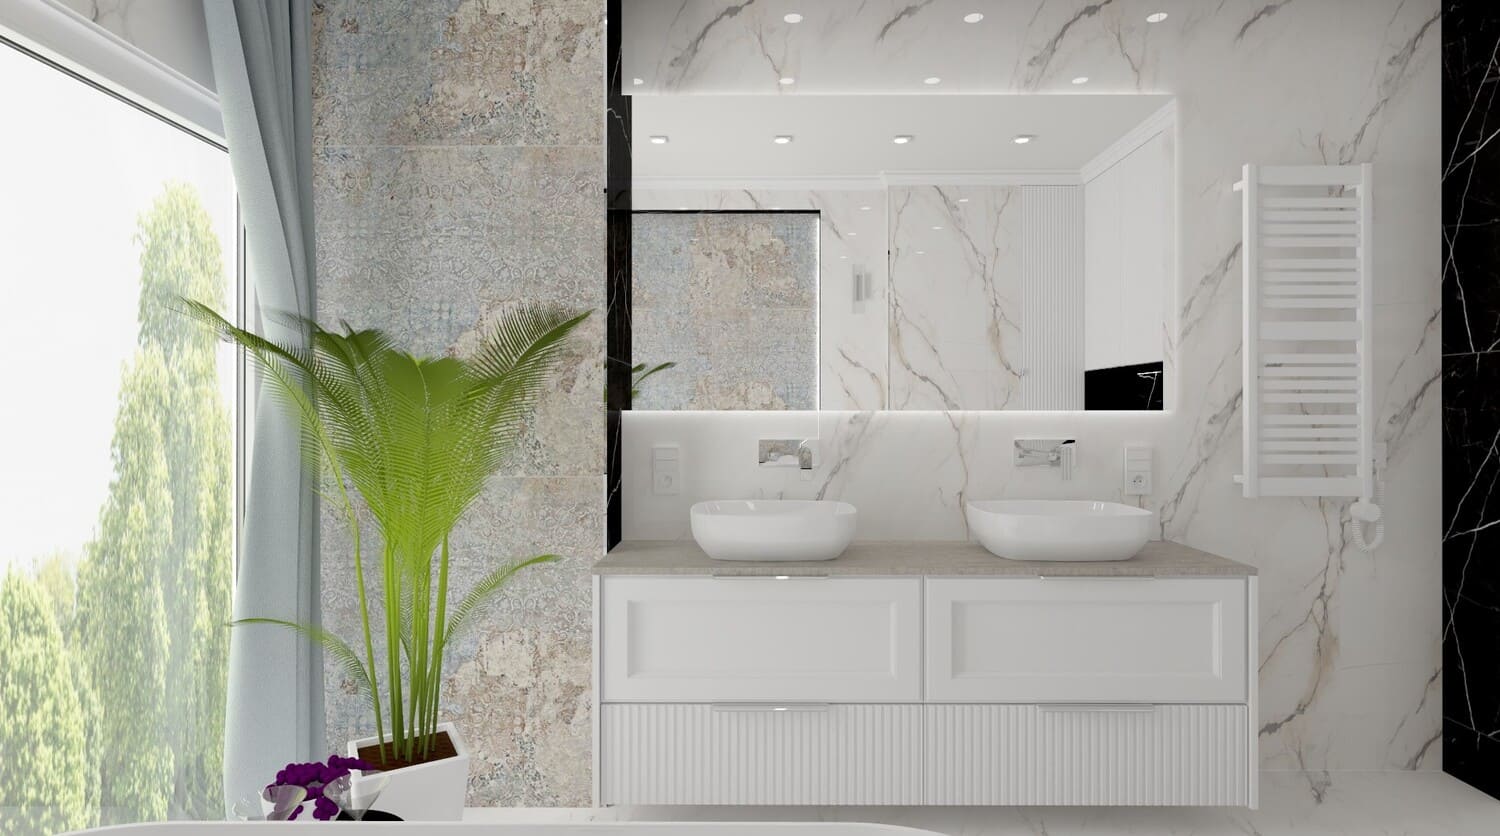 Biała łazienka - marmur, dekor - wizualizacja. Płyki biały marmur na podłodze i ścianie oraz dekor ceramiczny, patchworkowy.